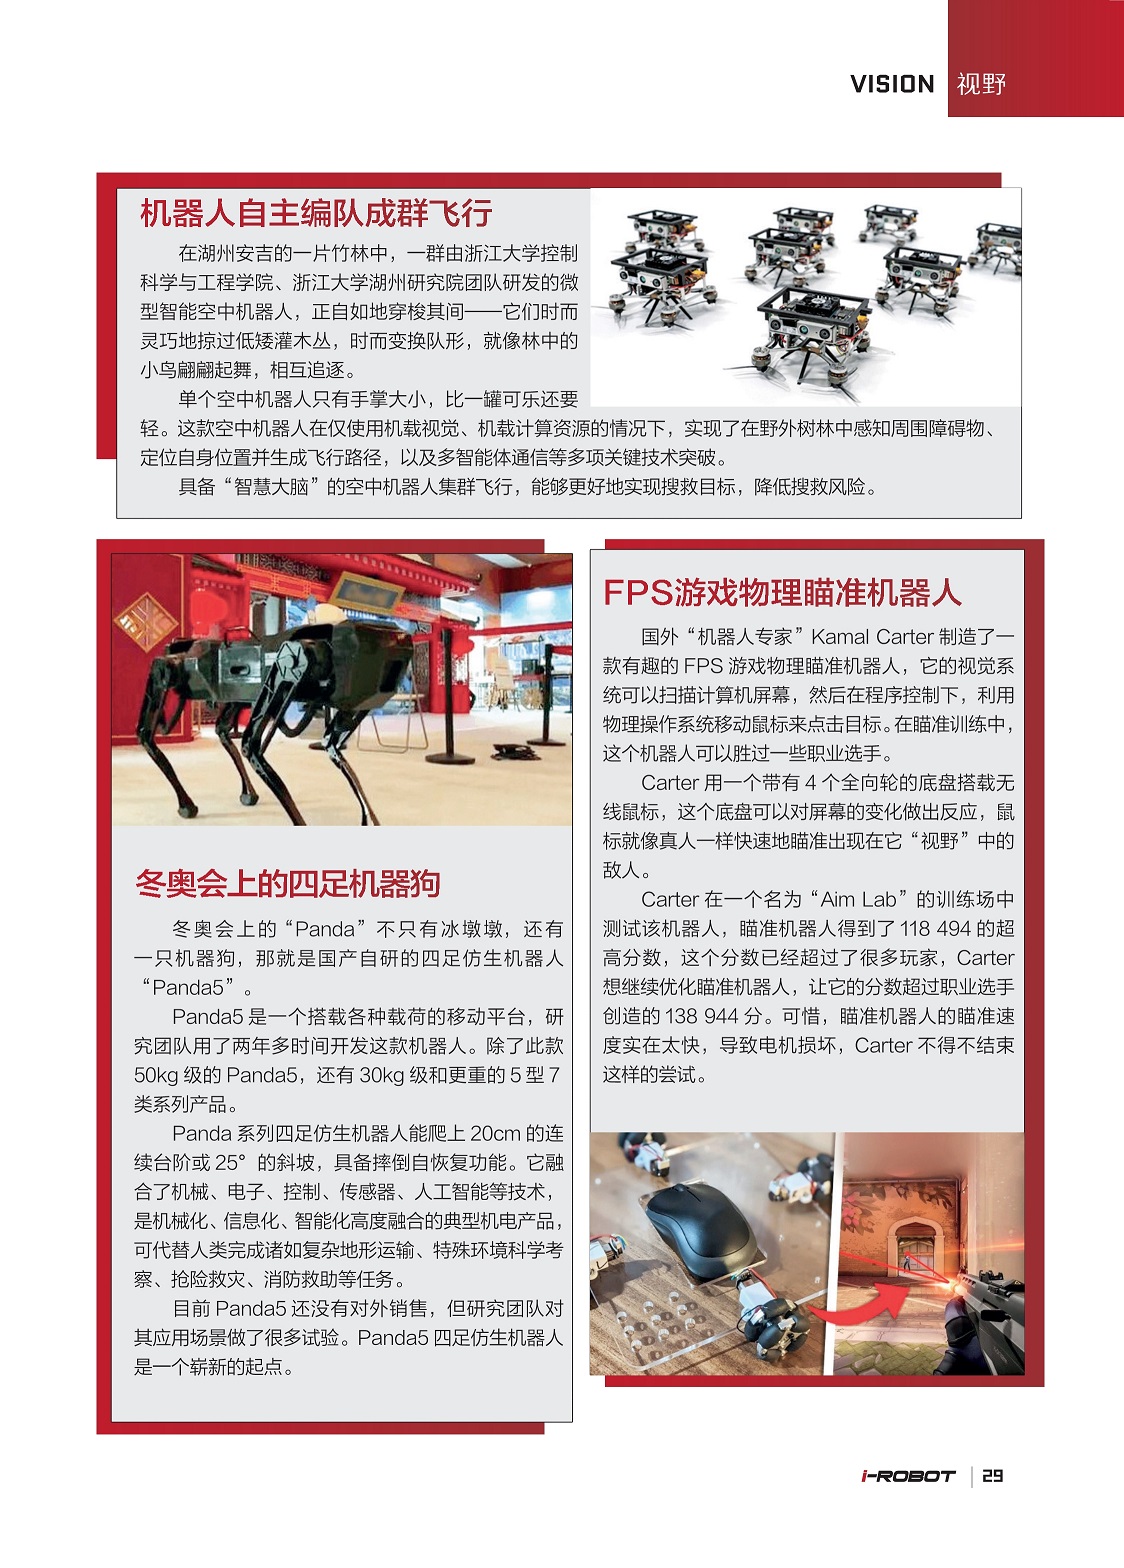 具备“智慧大脑”的空中机器人集群飞行, FPS游戏物理瞄准机器人